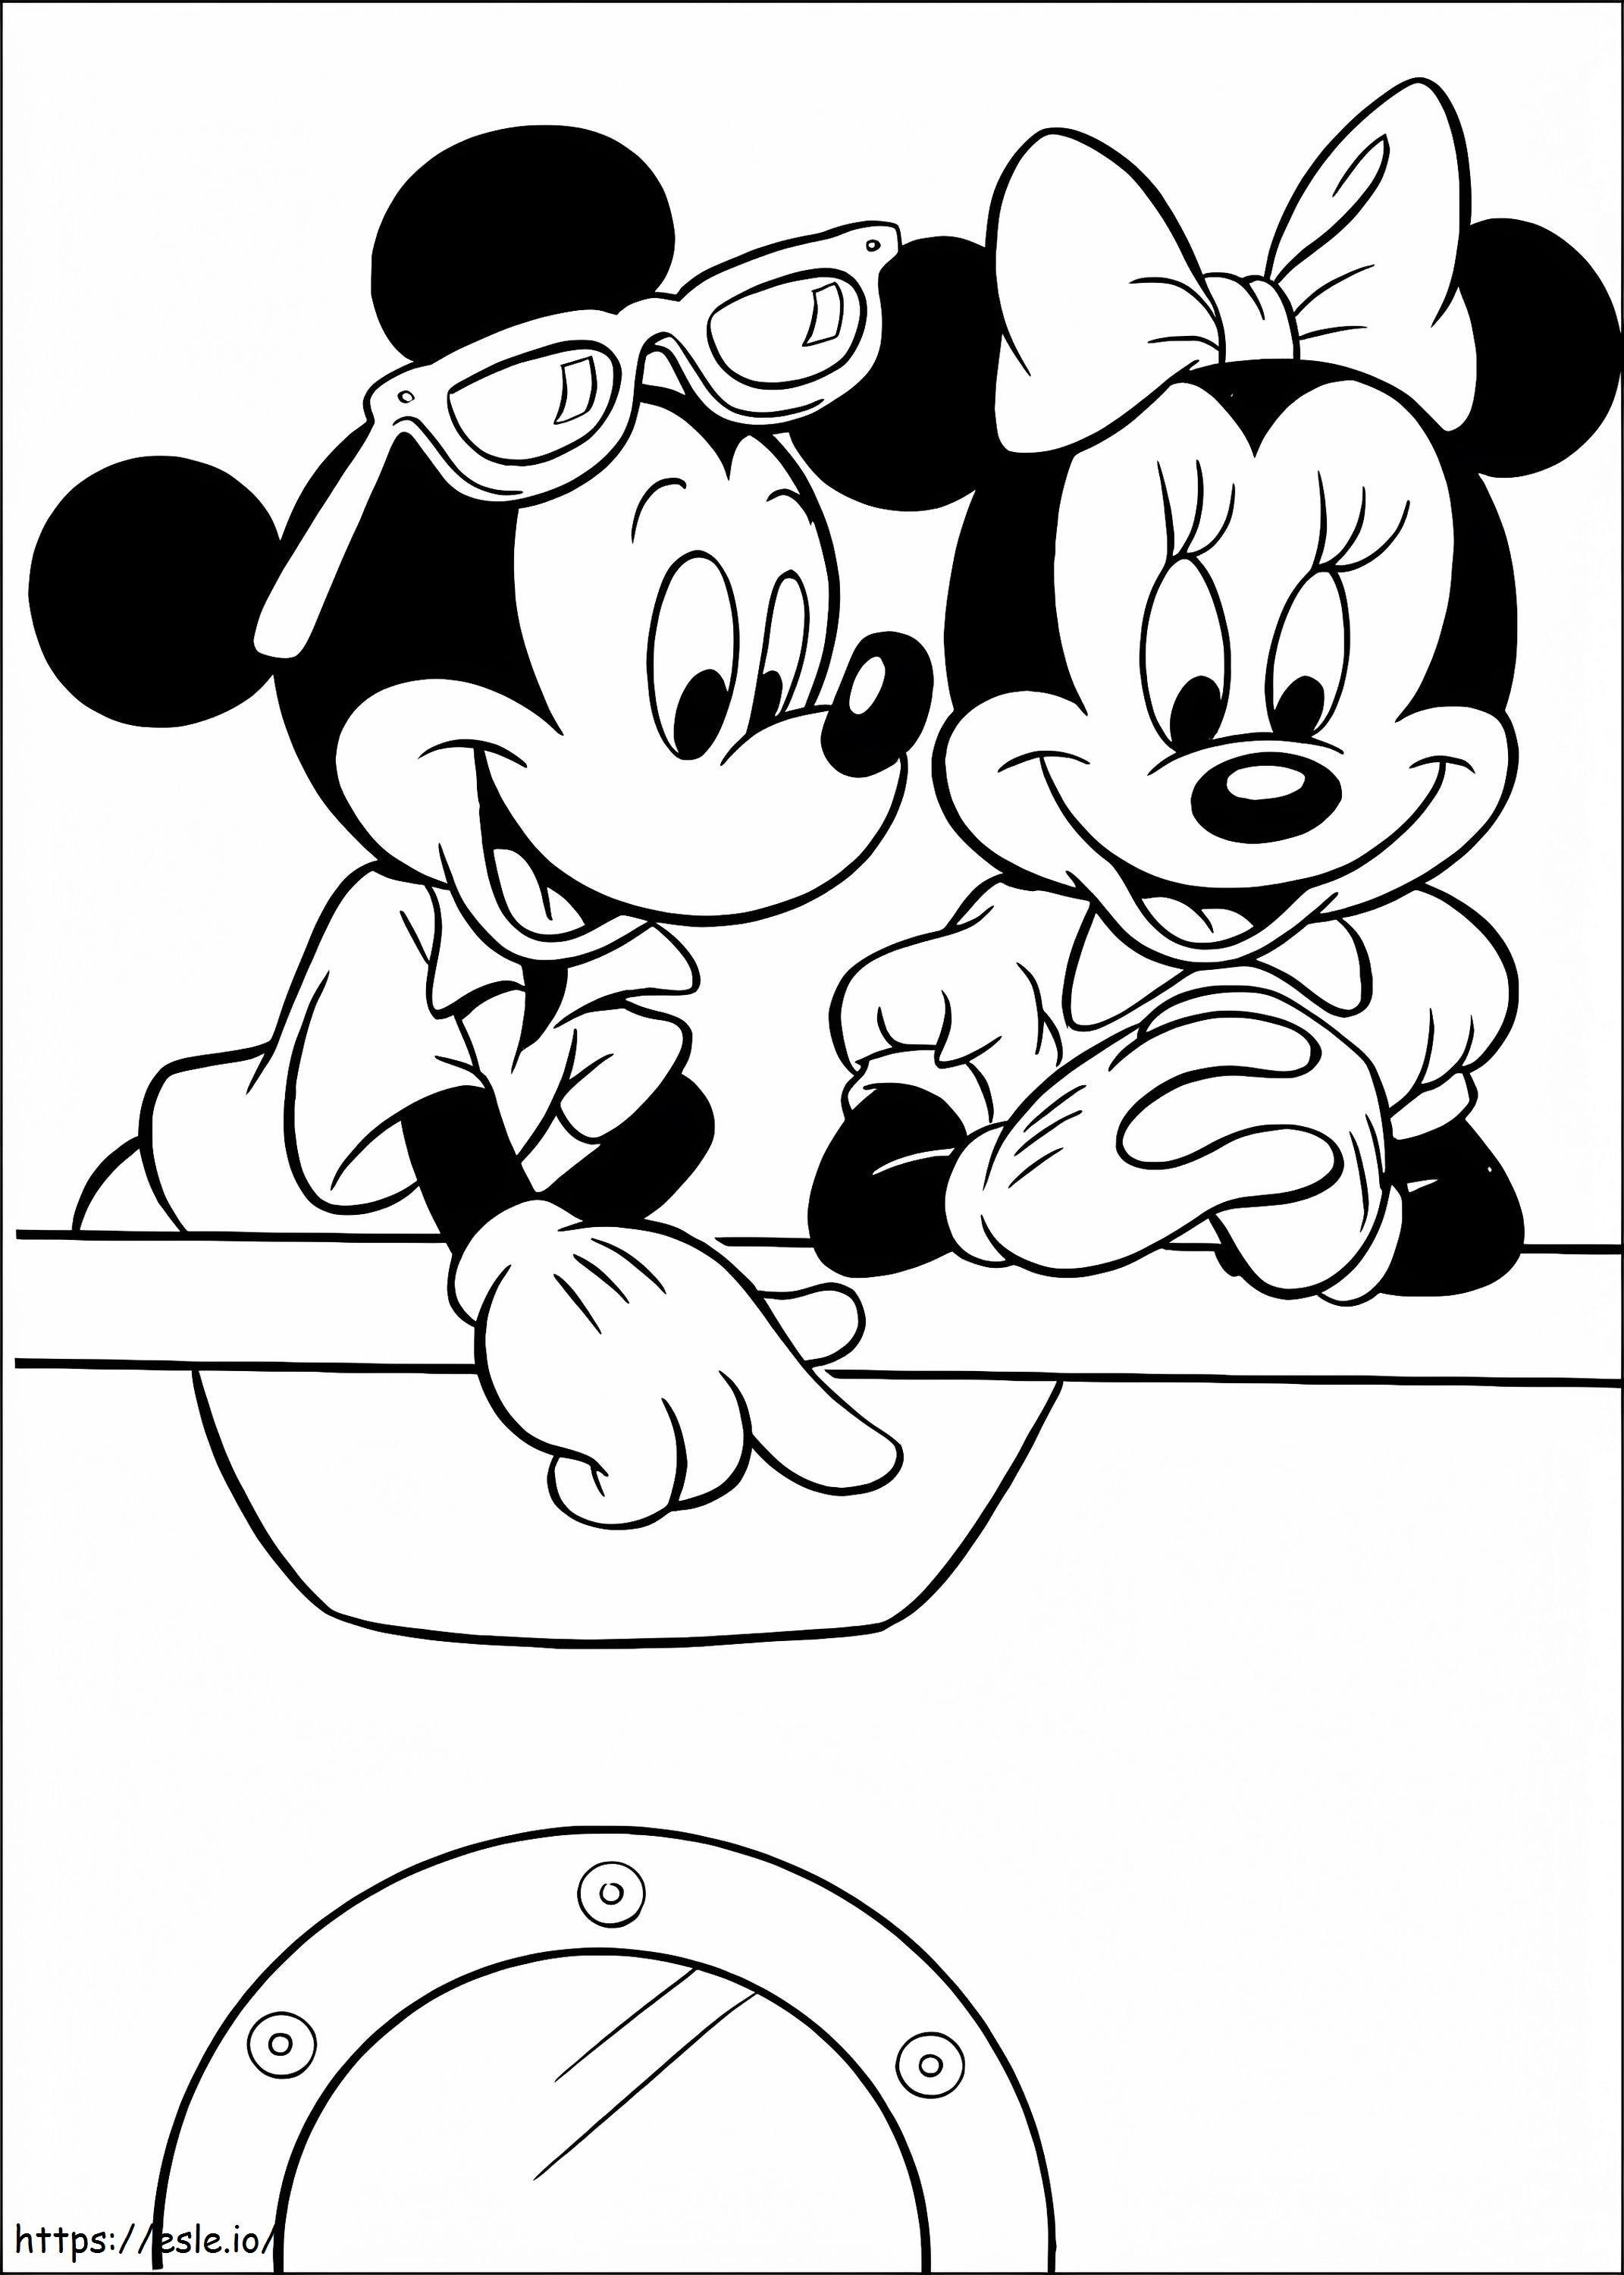 Coloriage Mickey et Minnie en vacances à imprimer dessin